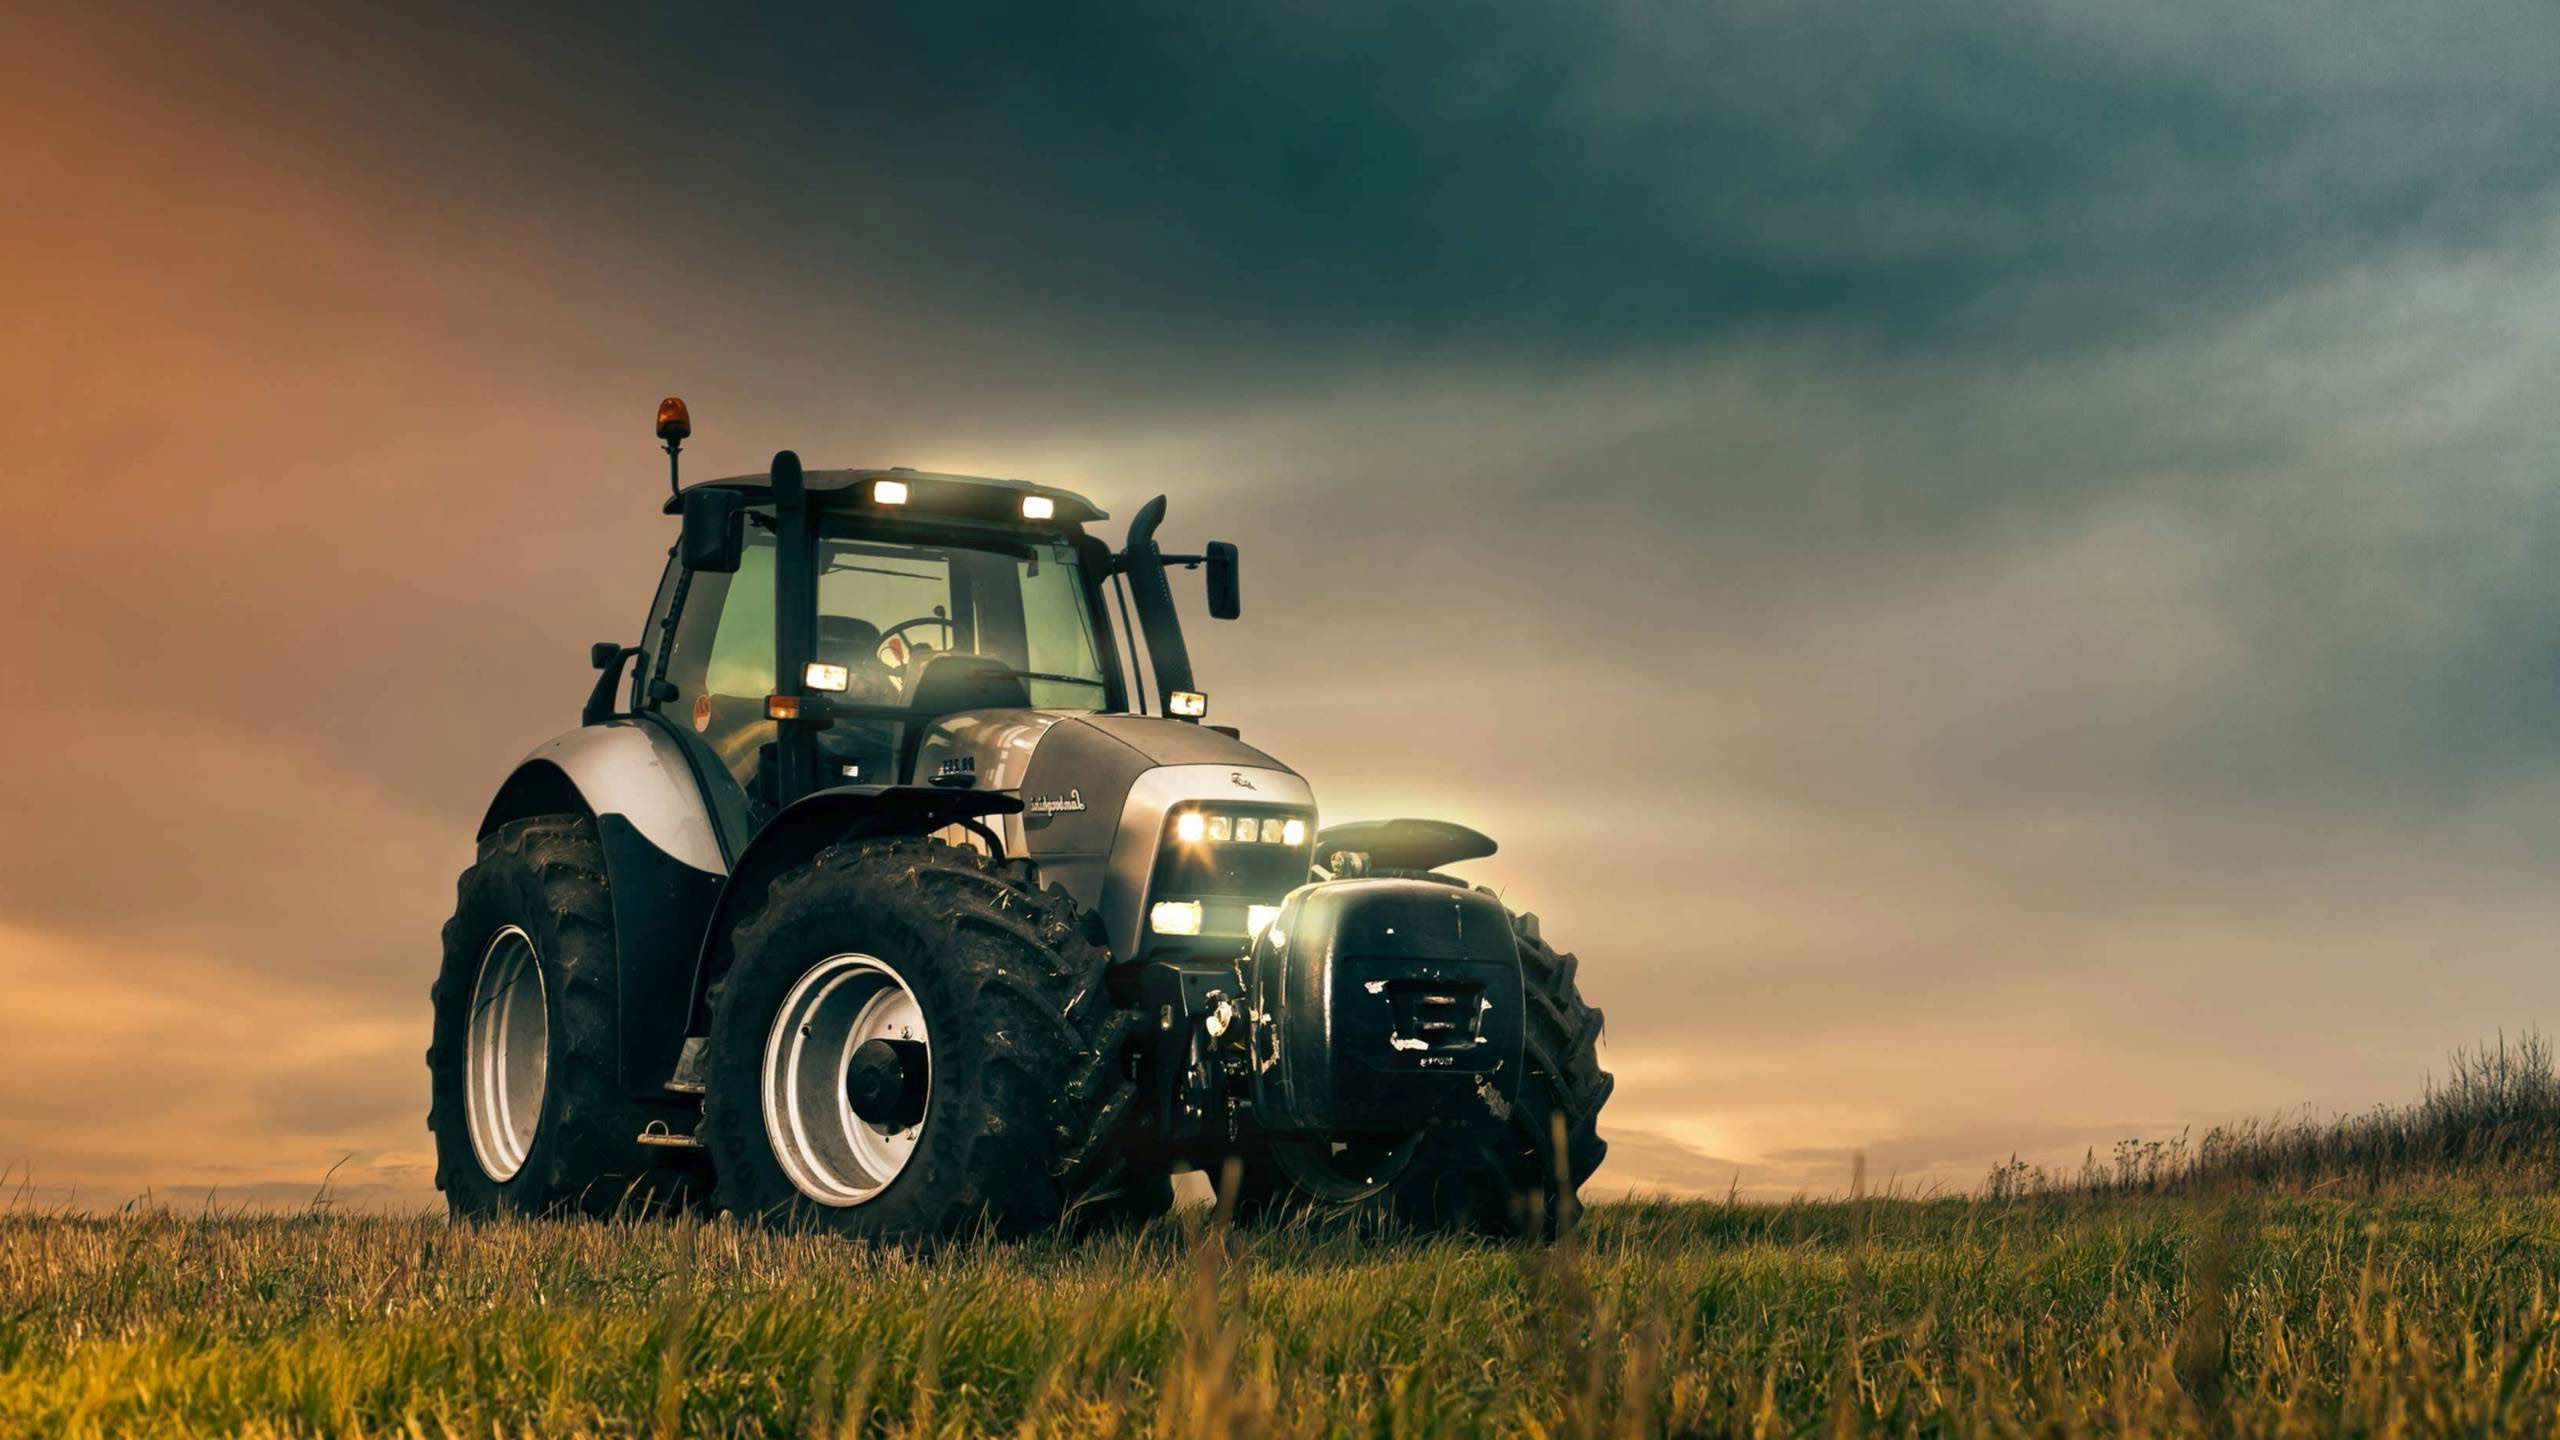 Farming Tractors Background. Farming Wallpaper, Cattle Farming Wallpaper and Farming Background